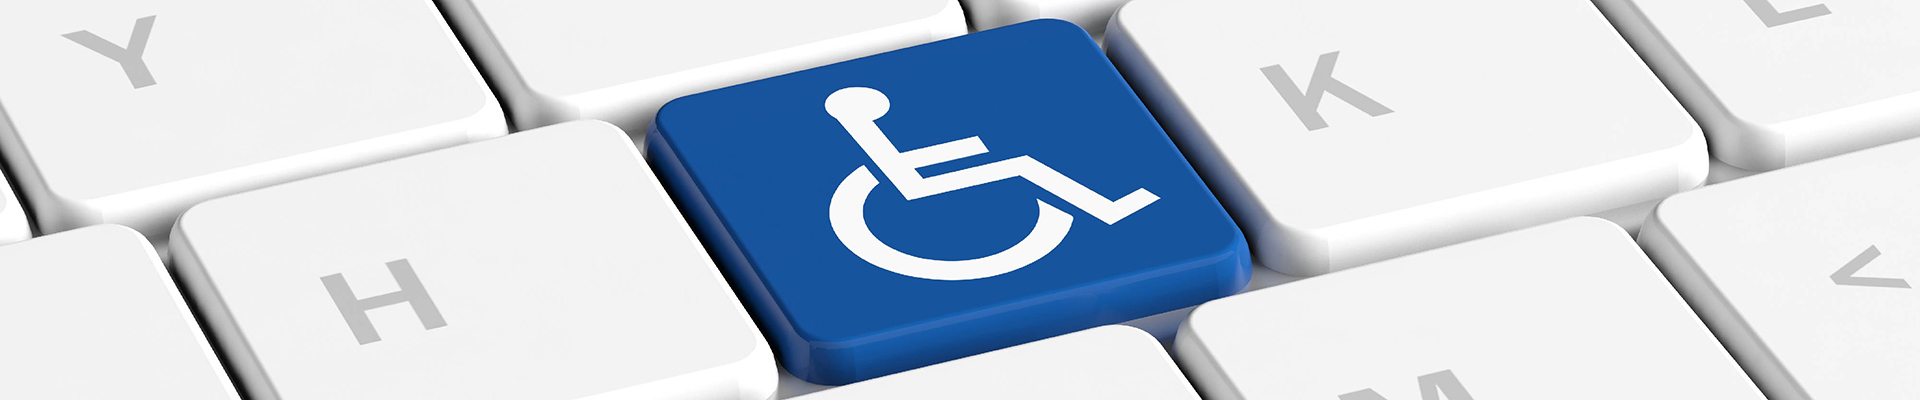 Engelli Öğrenci Birimi - Yönetmelik & Yönerge